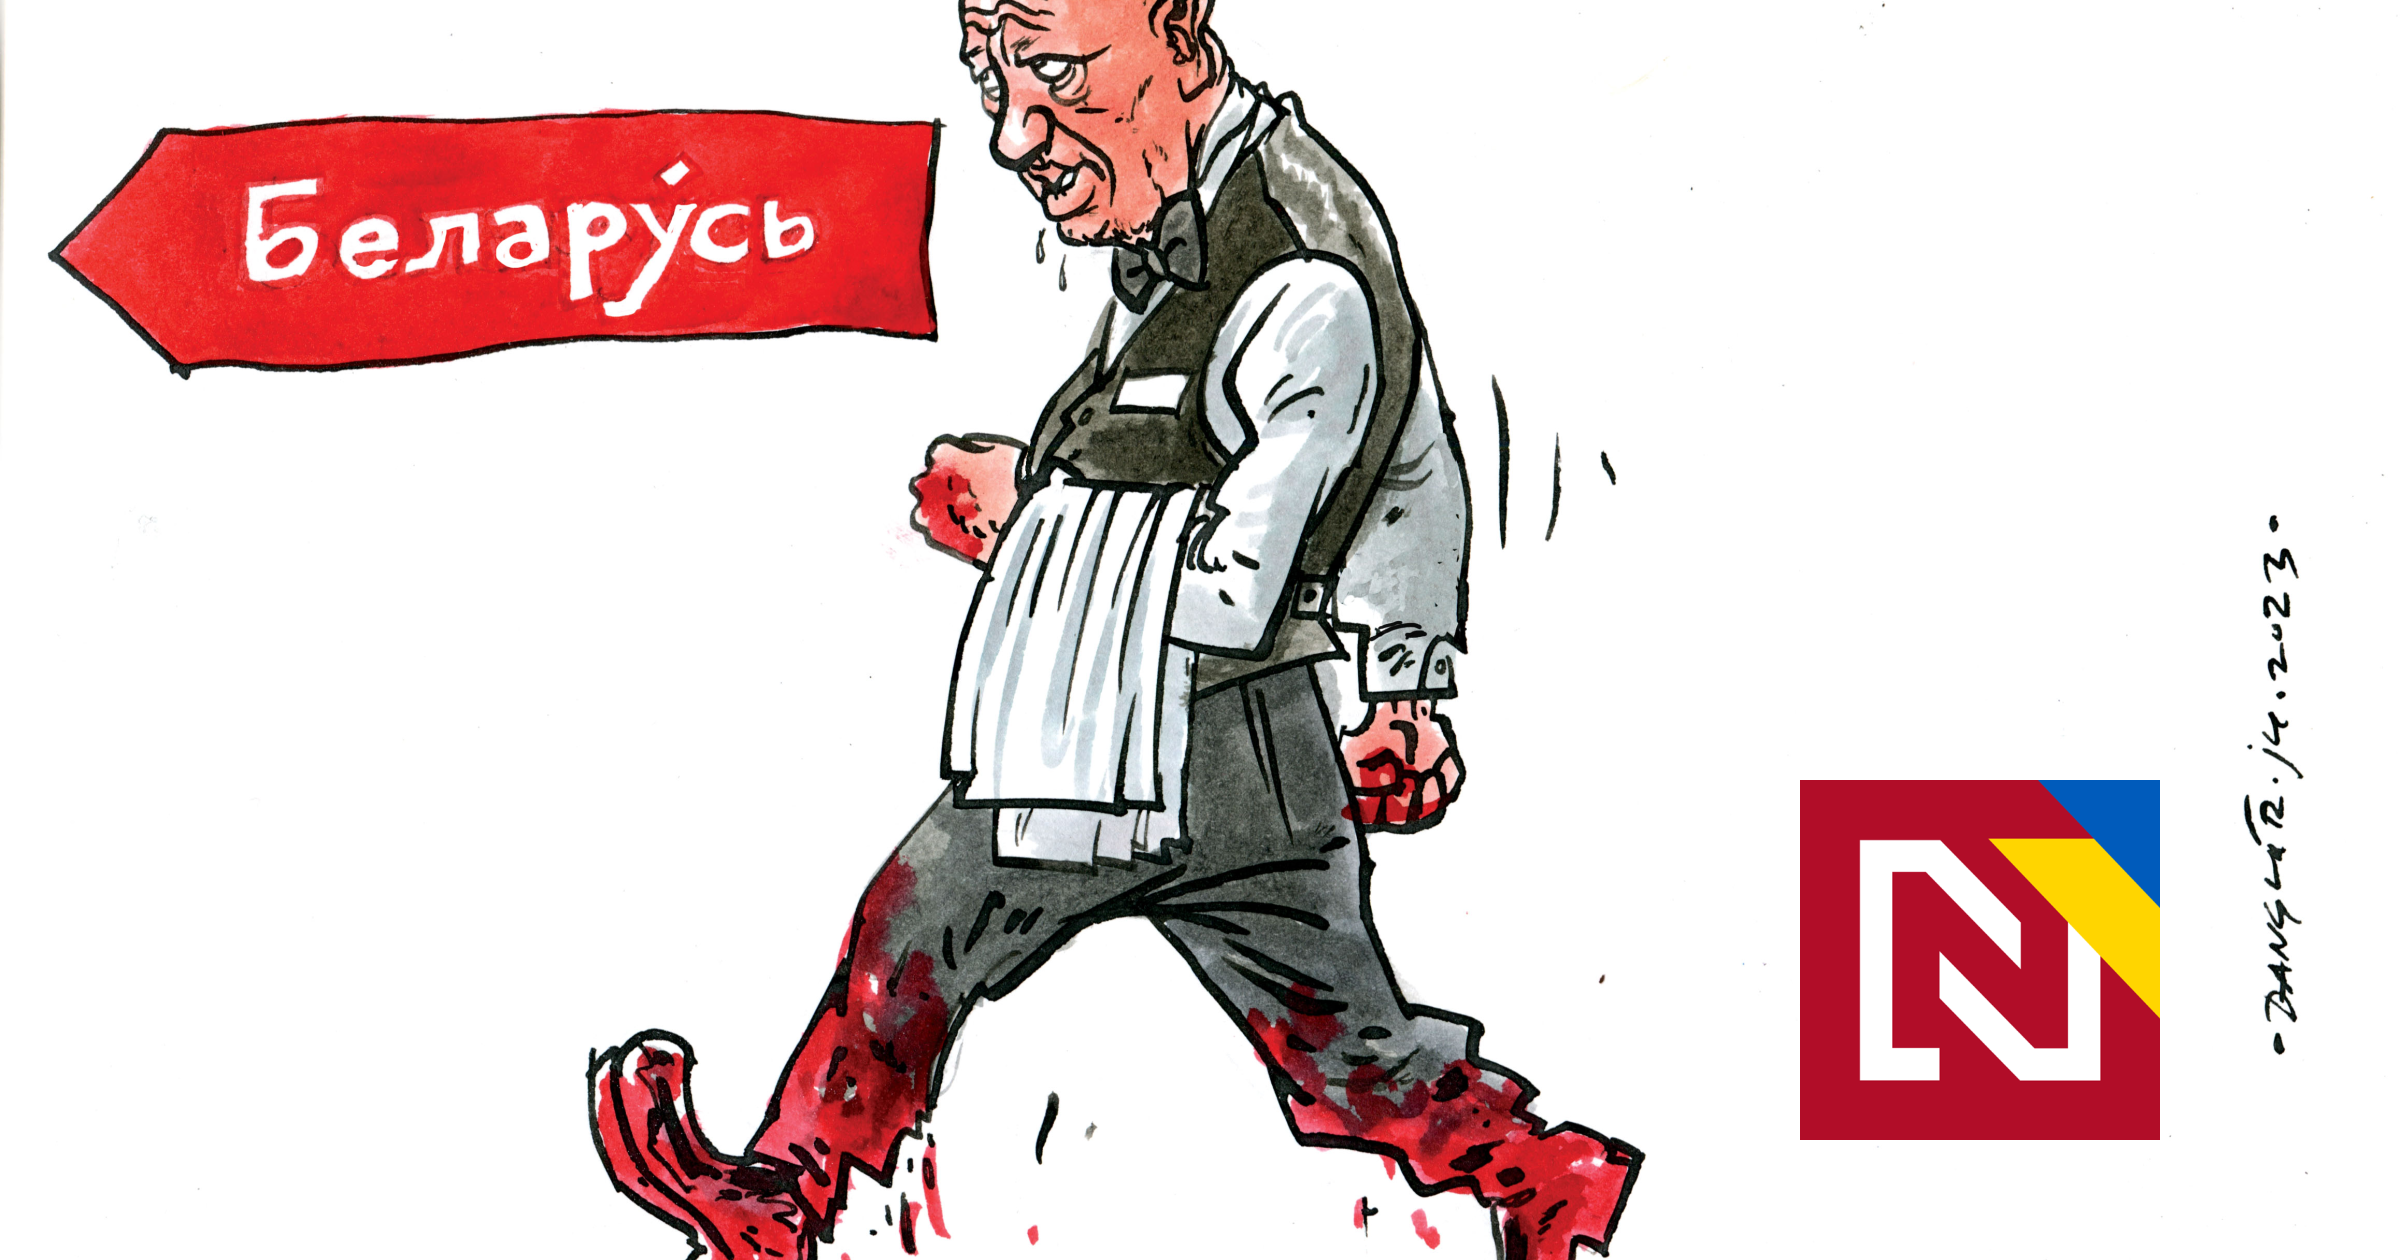 Putinov kuchár otvoril vodku, ale nalial riedky kvas (udalosti týždňa)